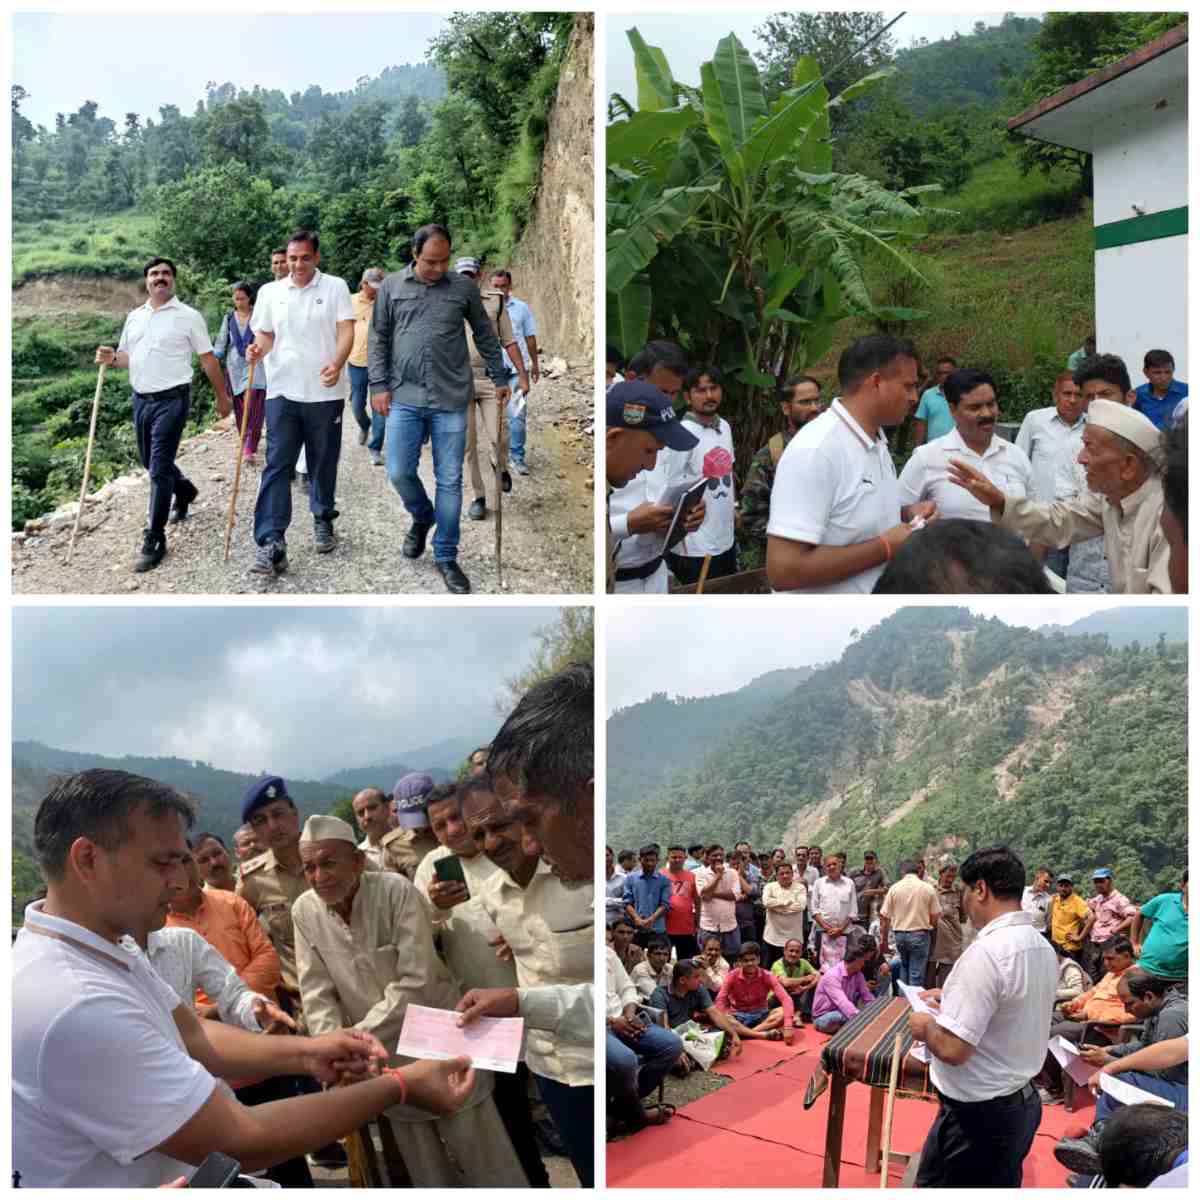 डीएम डॉ सौरभ गहरवार ने टीम के साथ आपदा प्रभावित गांवों का किया दौरा, मौके पर अधिकारियों को दिए दिशा निर्देश